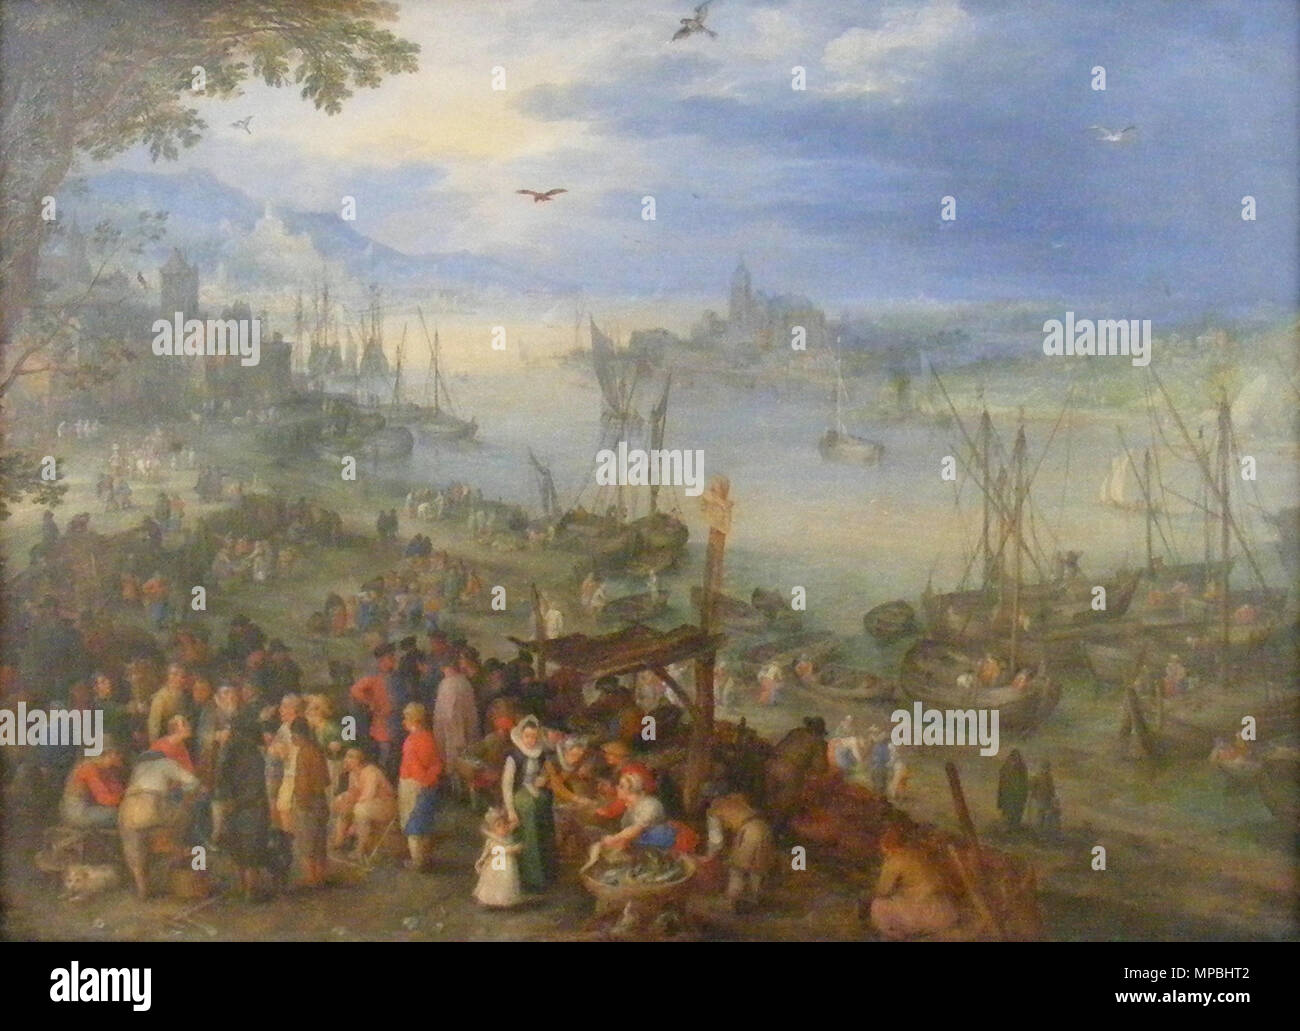 Q29871382. Deutsch : Fischmarkt Am Ufer eines Flusses . peint au 17e siècle. 696 Jan Brueghel l'ancien - Fischmarkt Am Ufer eines Flusses Banque D'Images